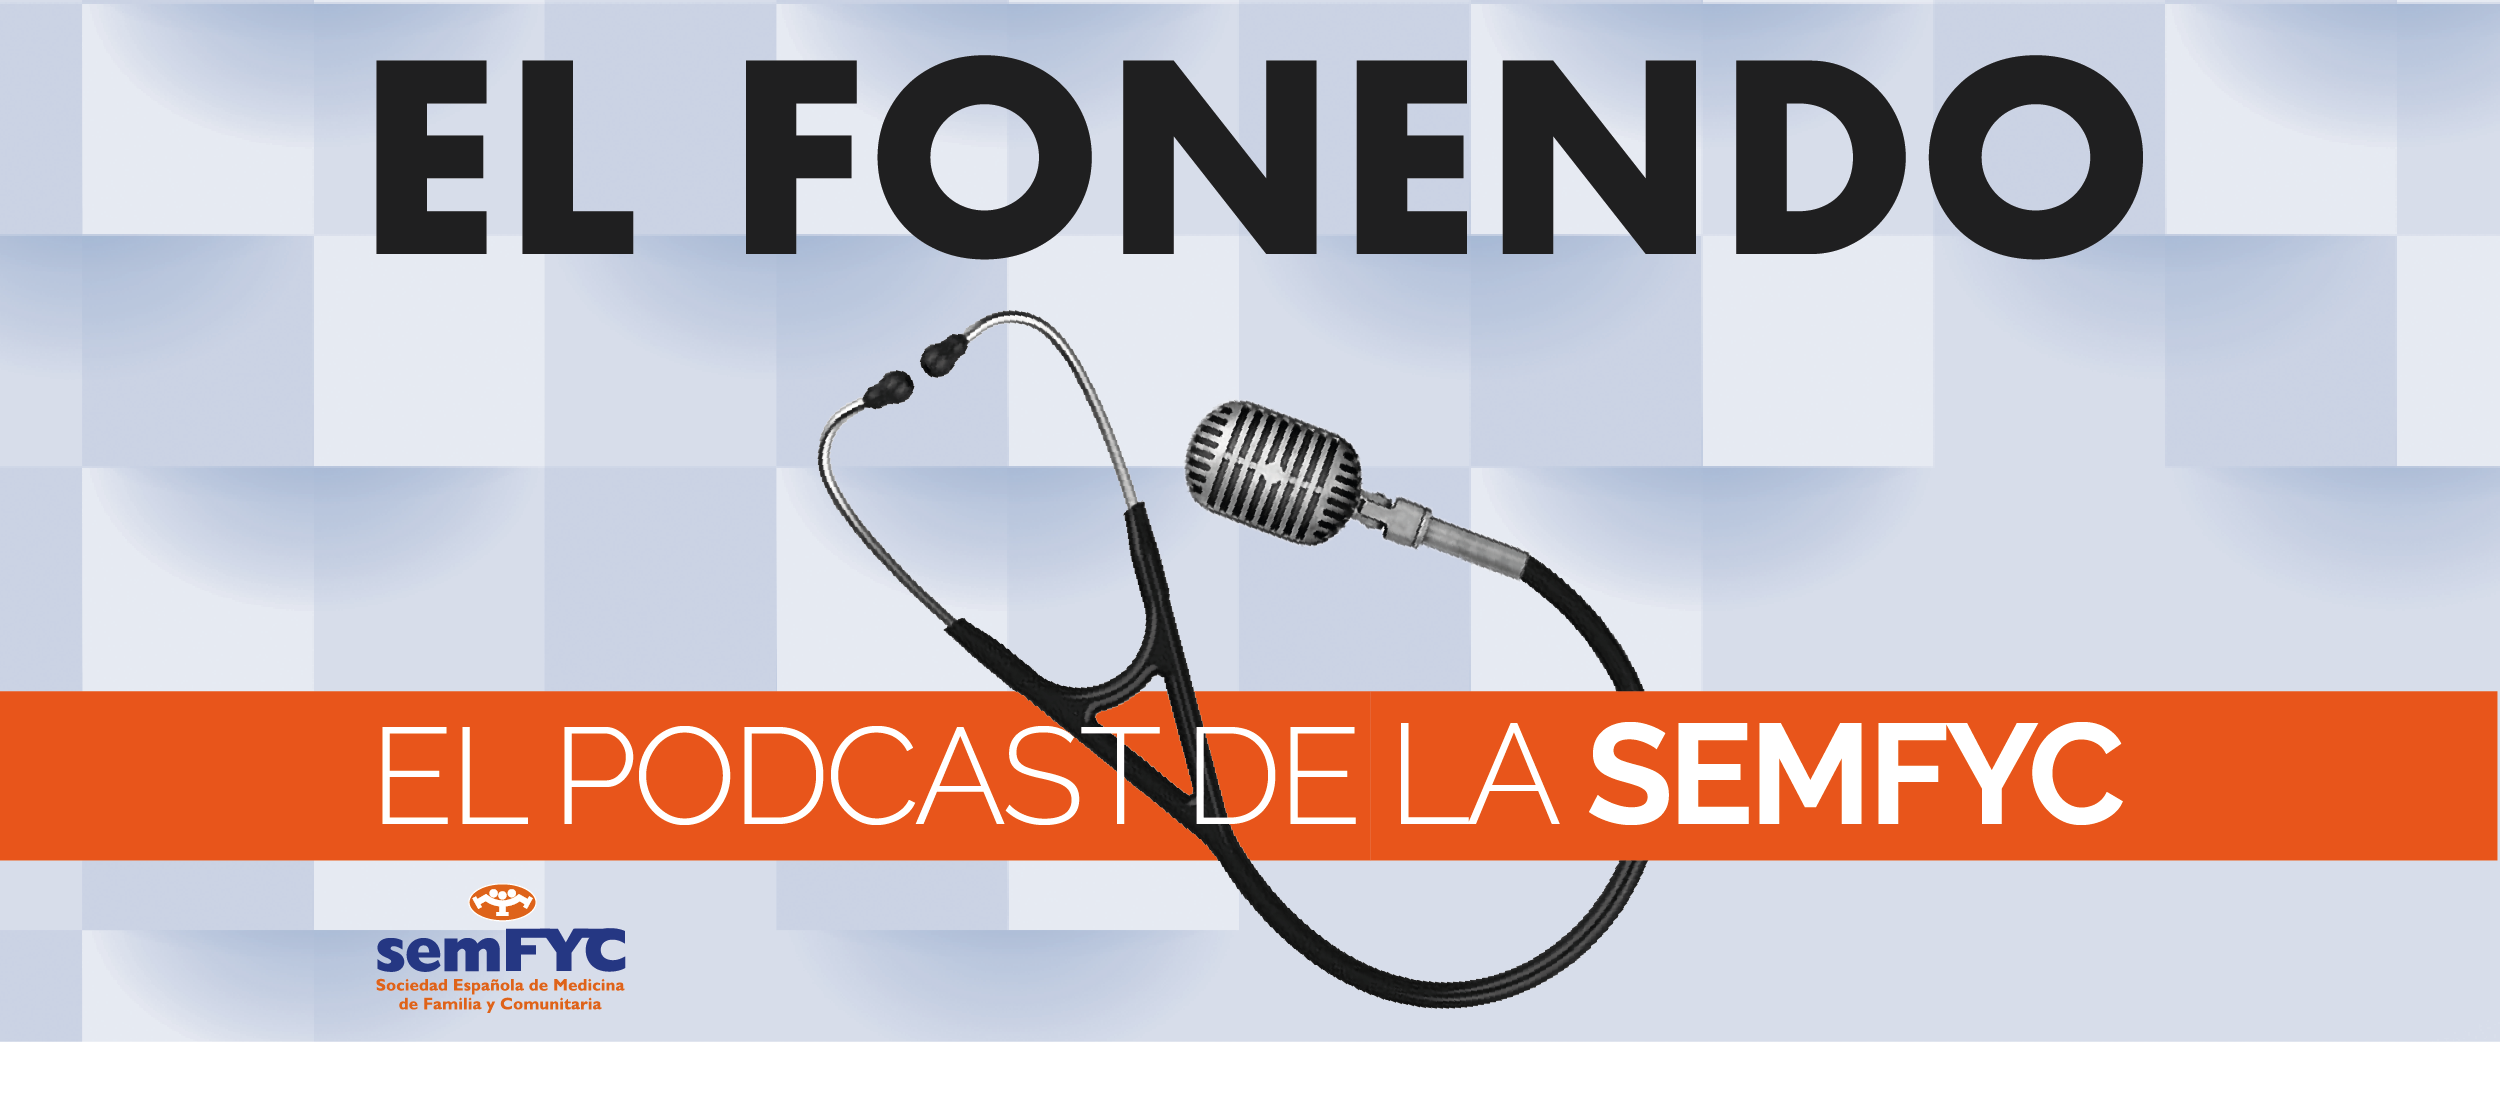 La semFYC estrena podcast coincidiendo con su 42º Congreso en Sevilla